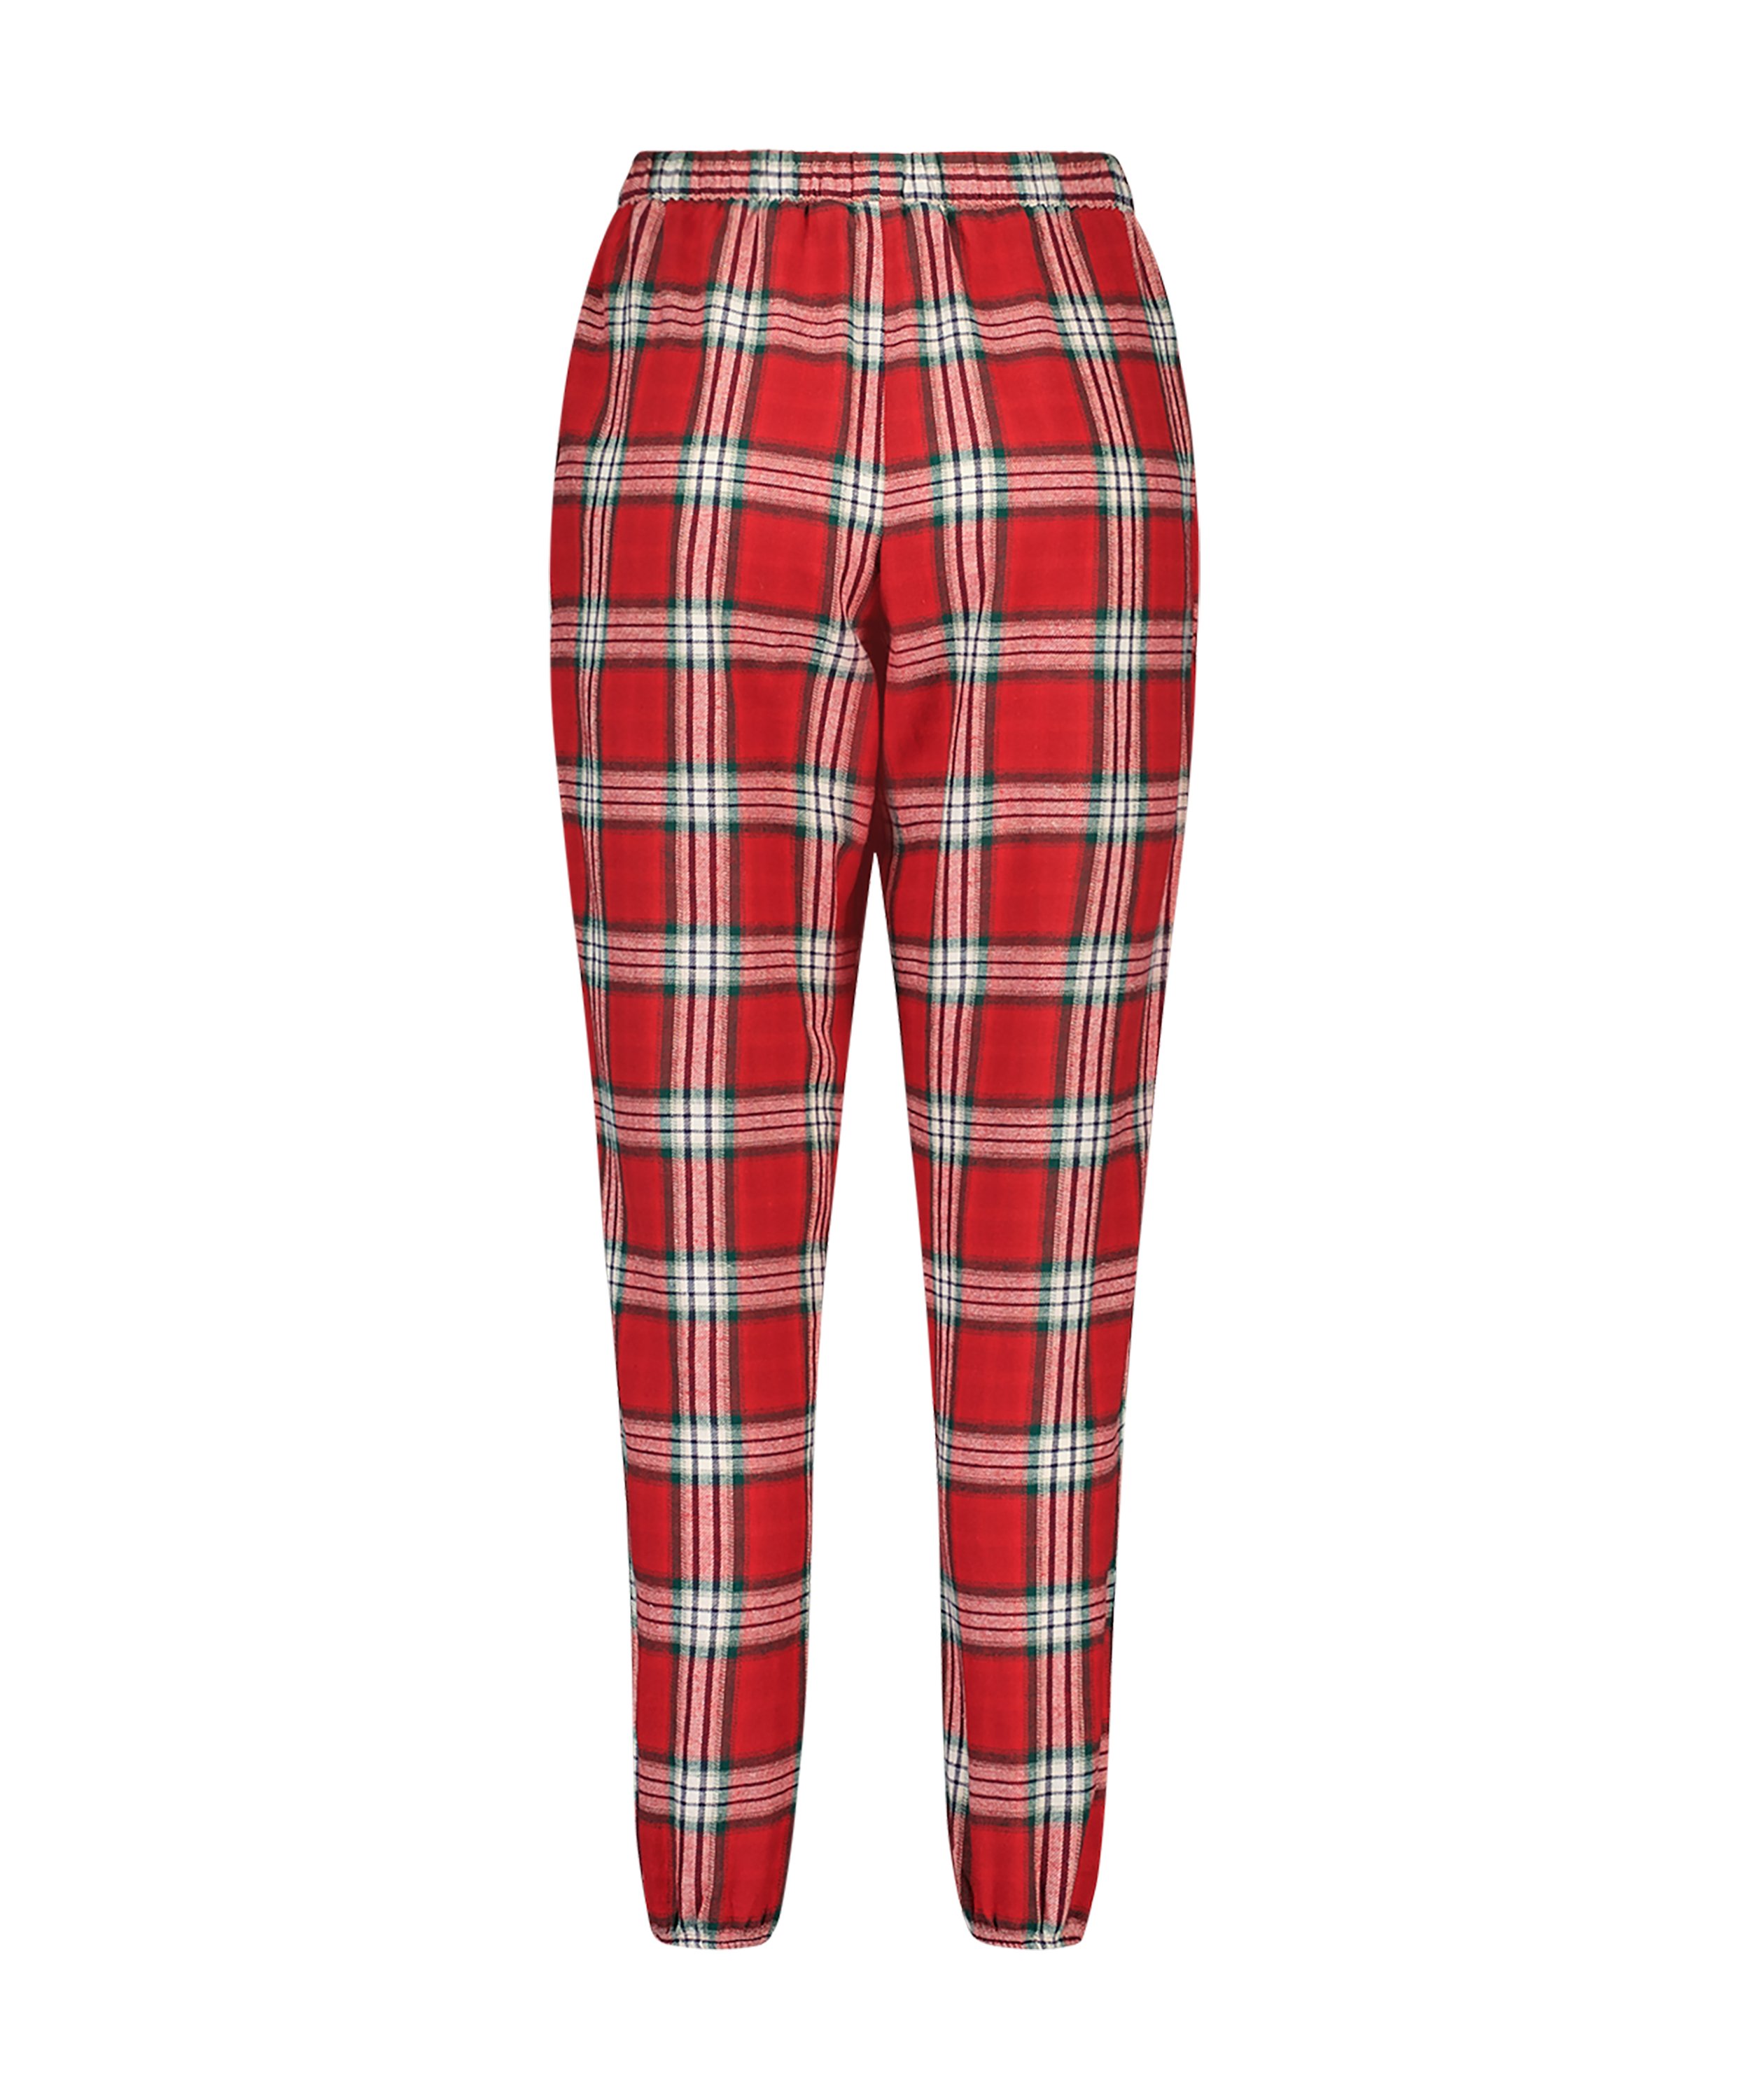 Petite Twill Check Pyjama pants, röd, main